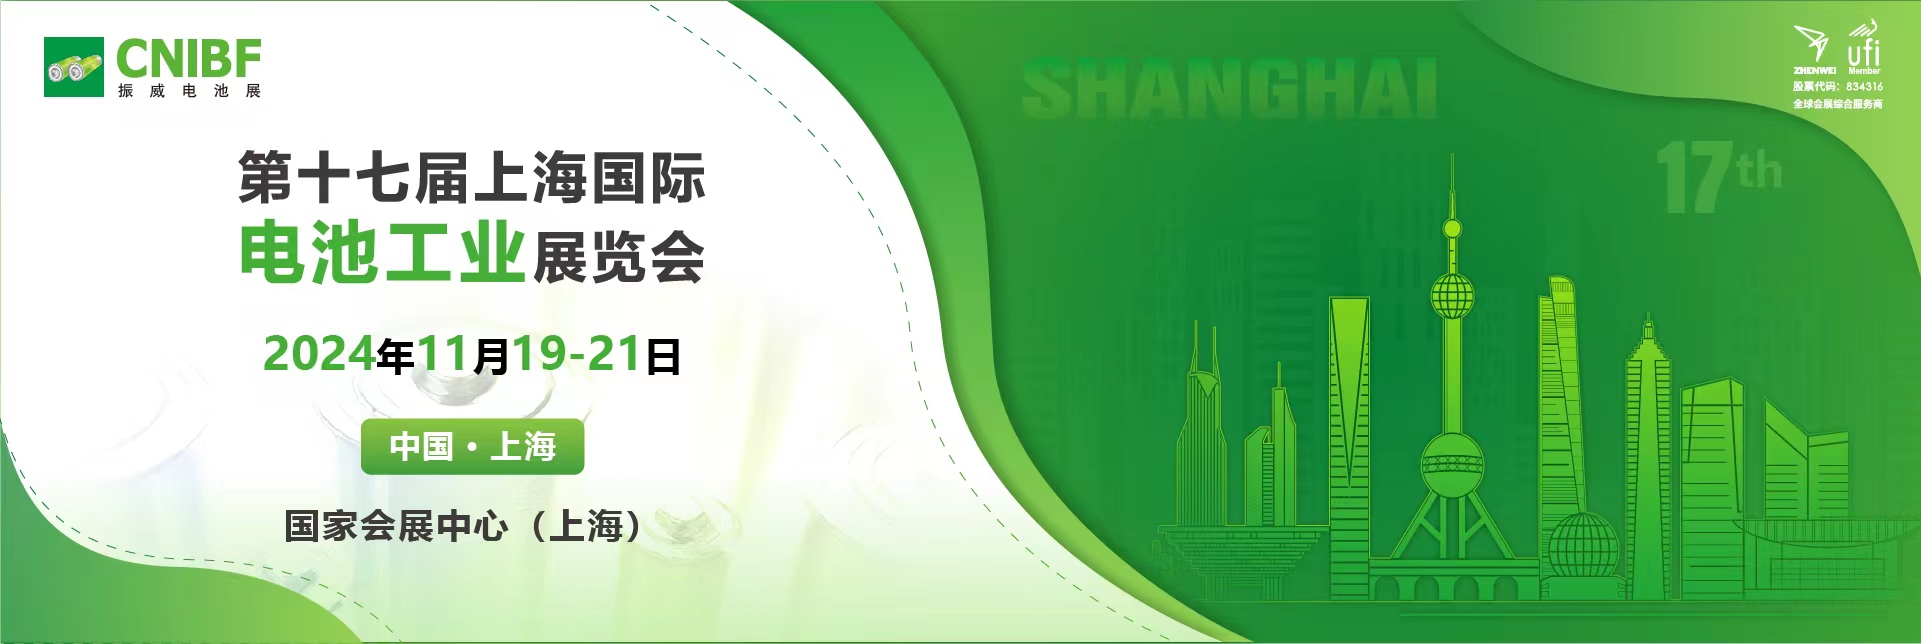 CNIBF第十七届上海国际电池工业展览会【官网】